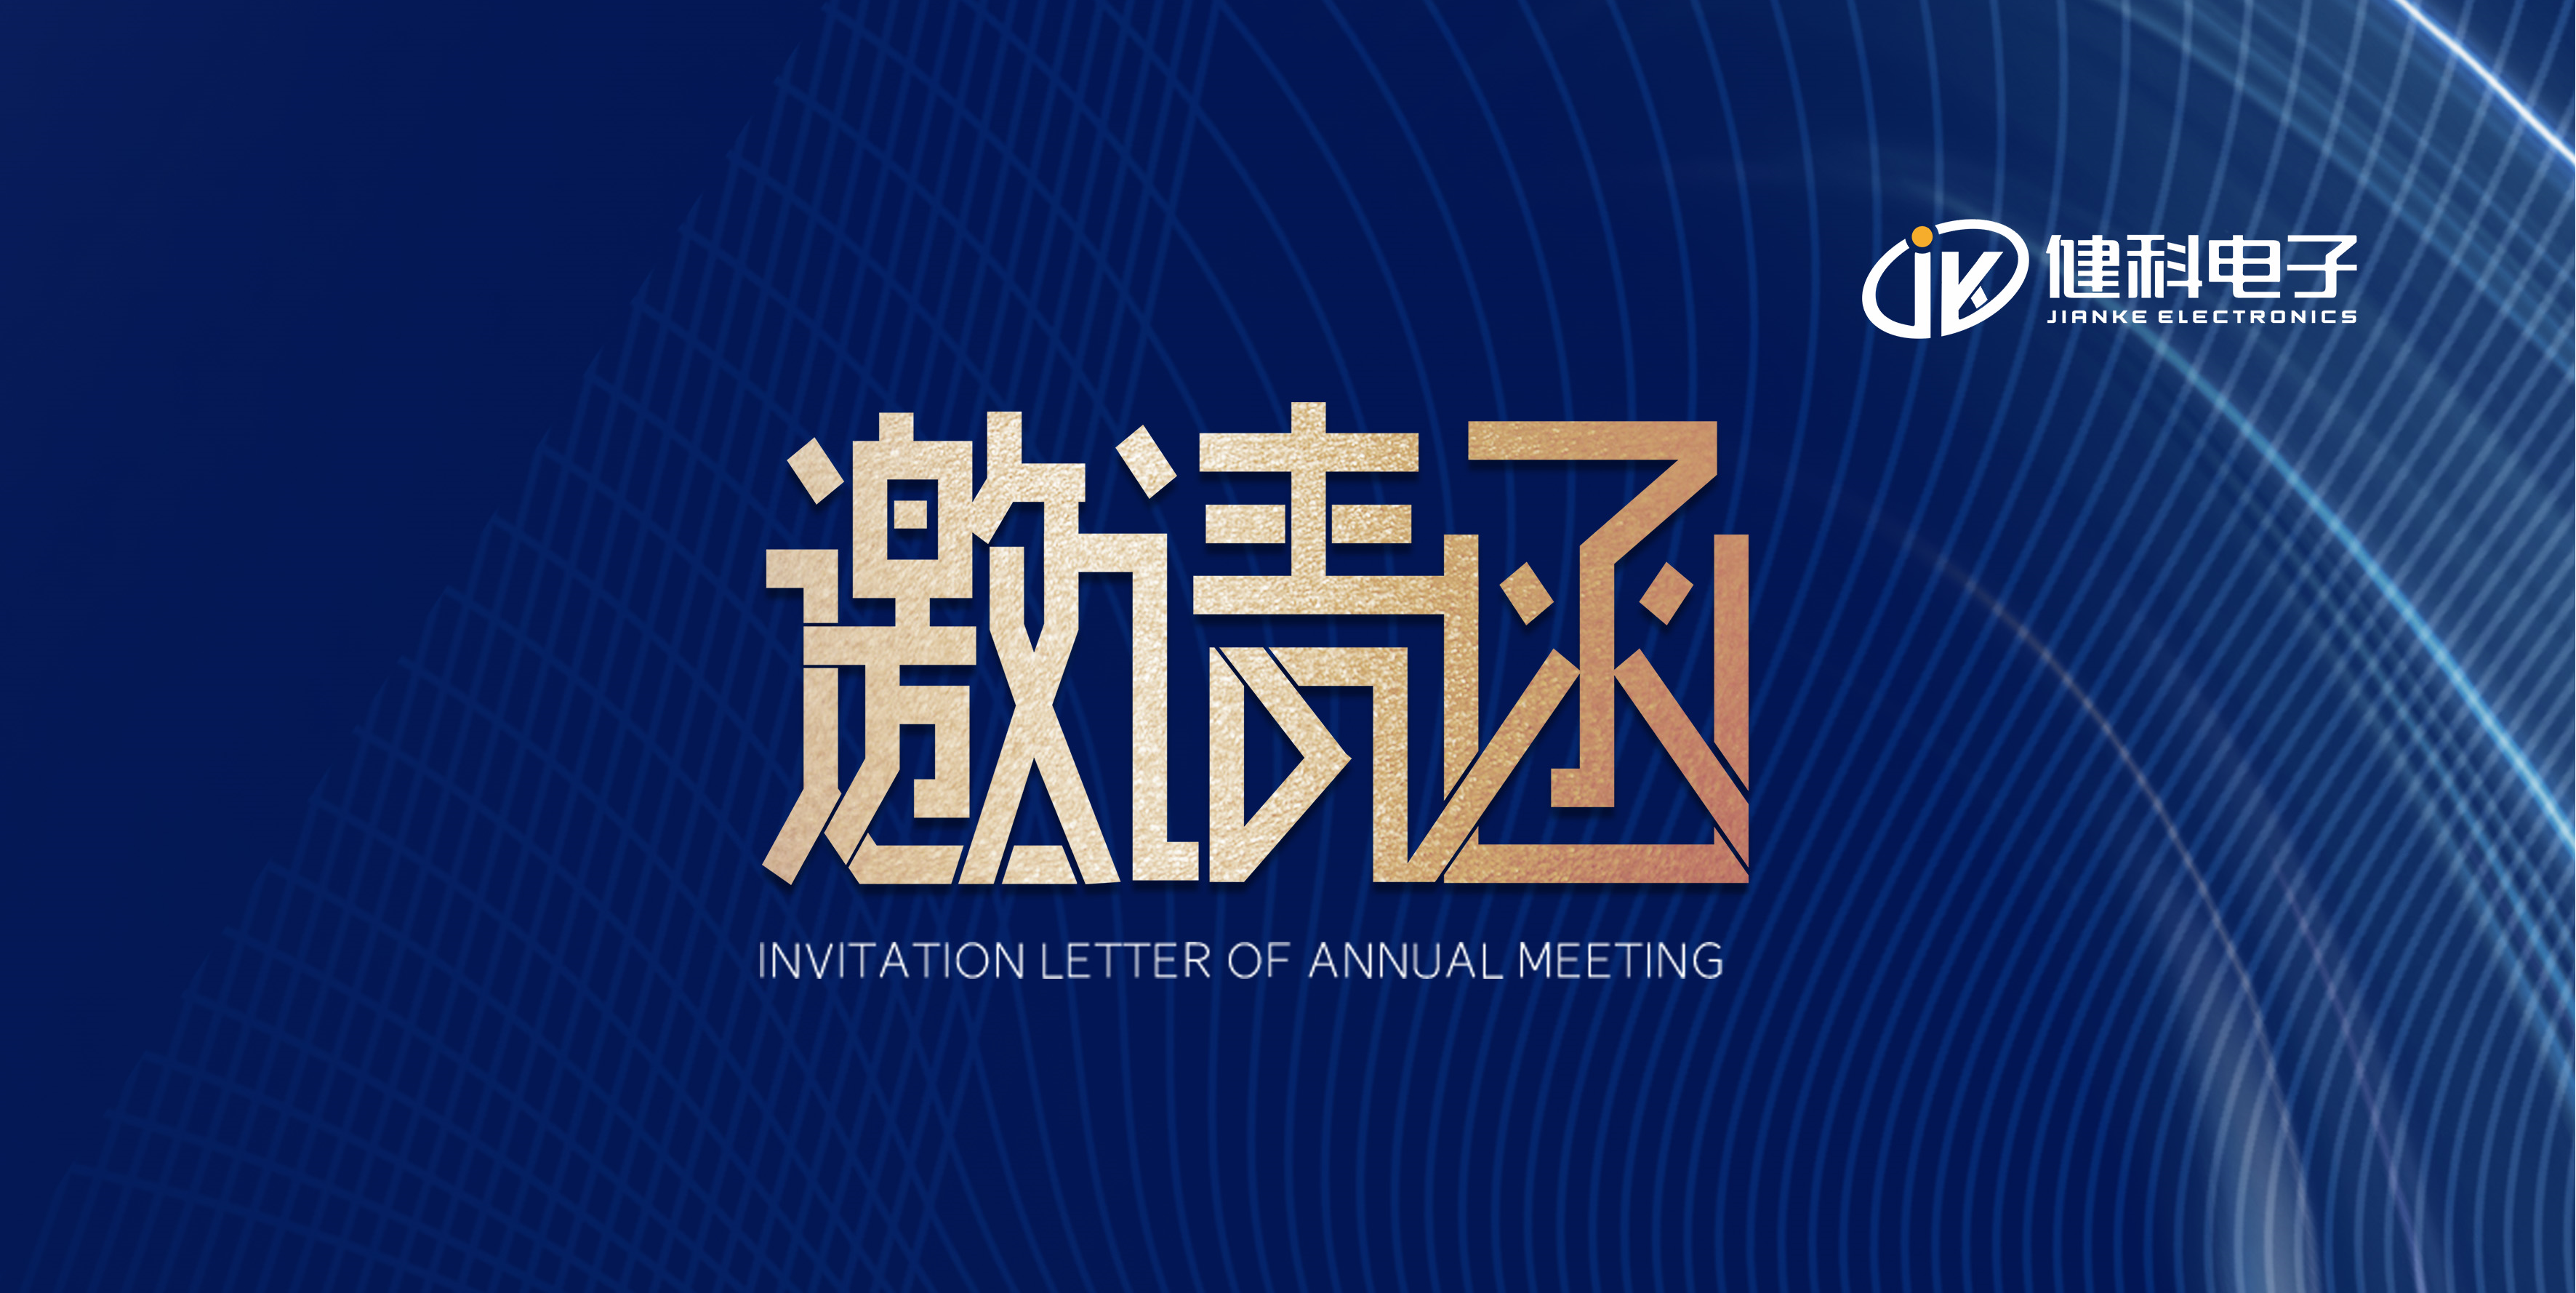 展會邀請 I 健科電子與您相約第21屆上海國際車用空調及冷藏技術展覽會